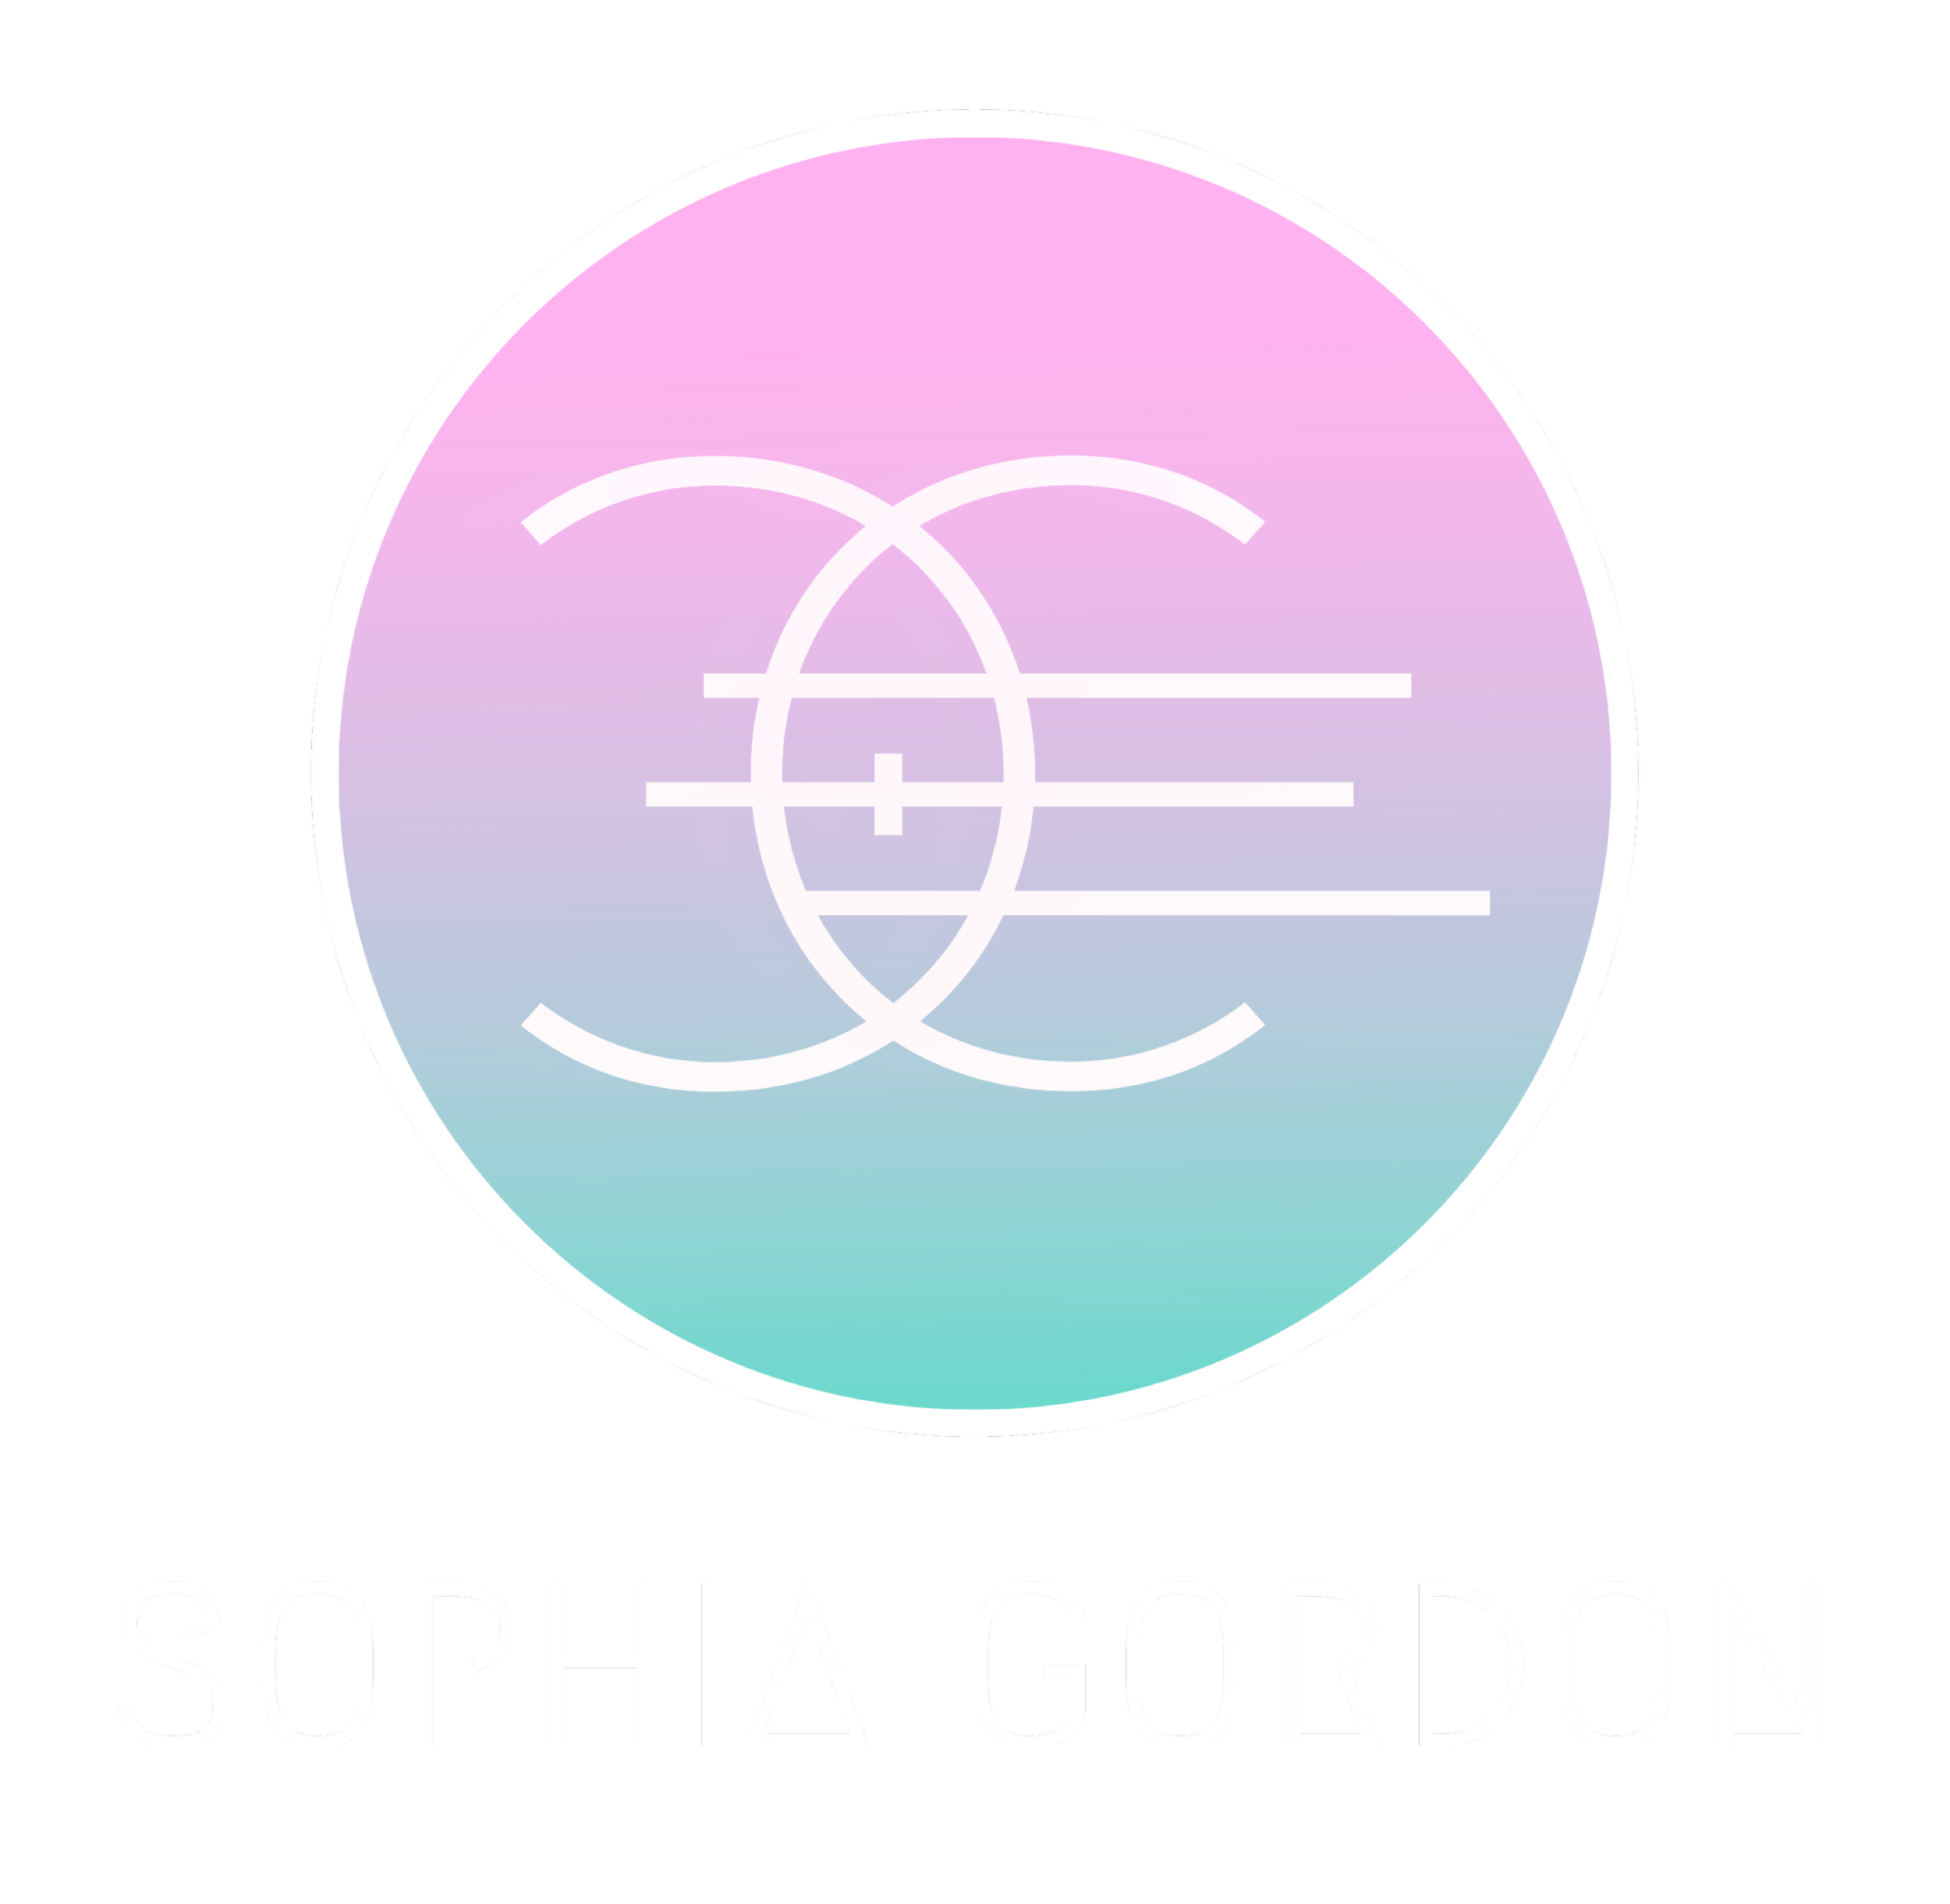 SOPHIA GORDON